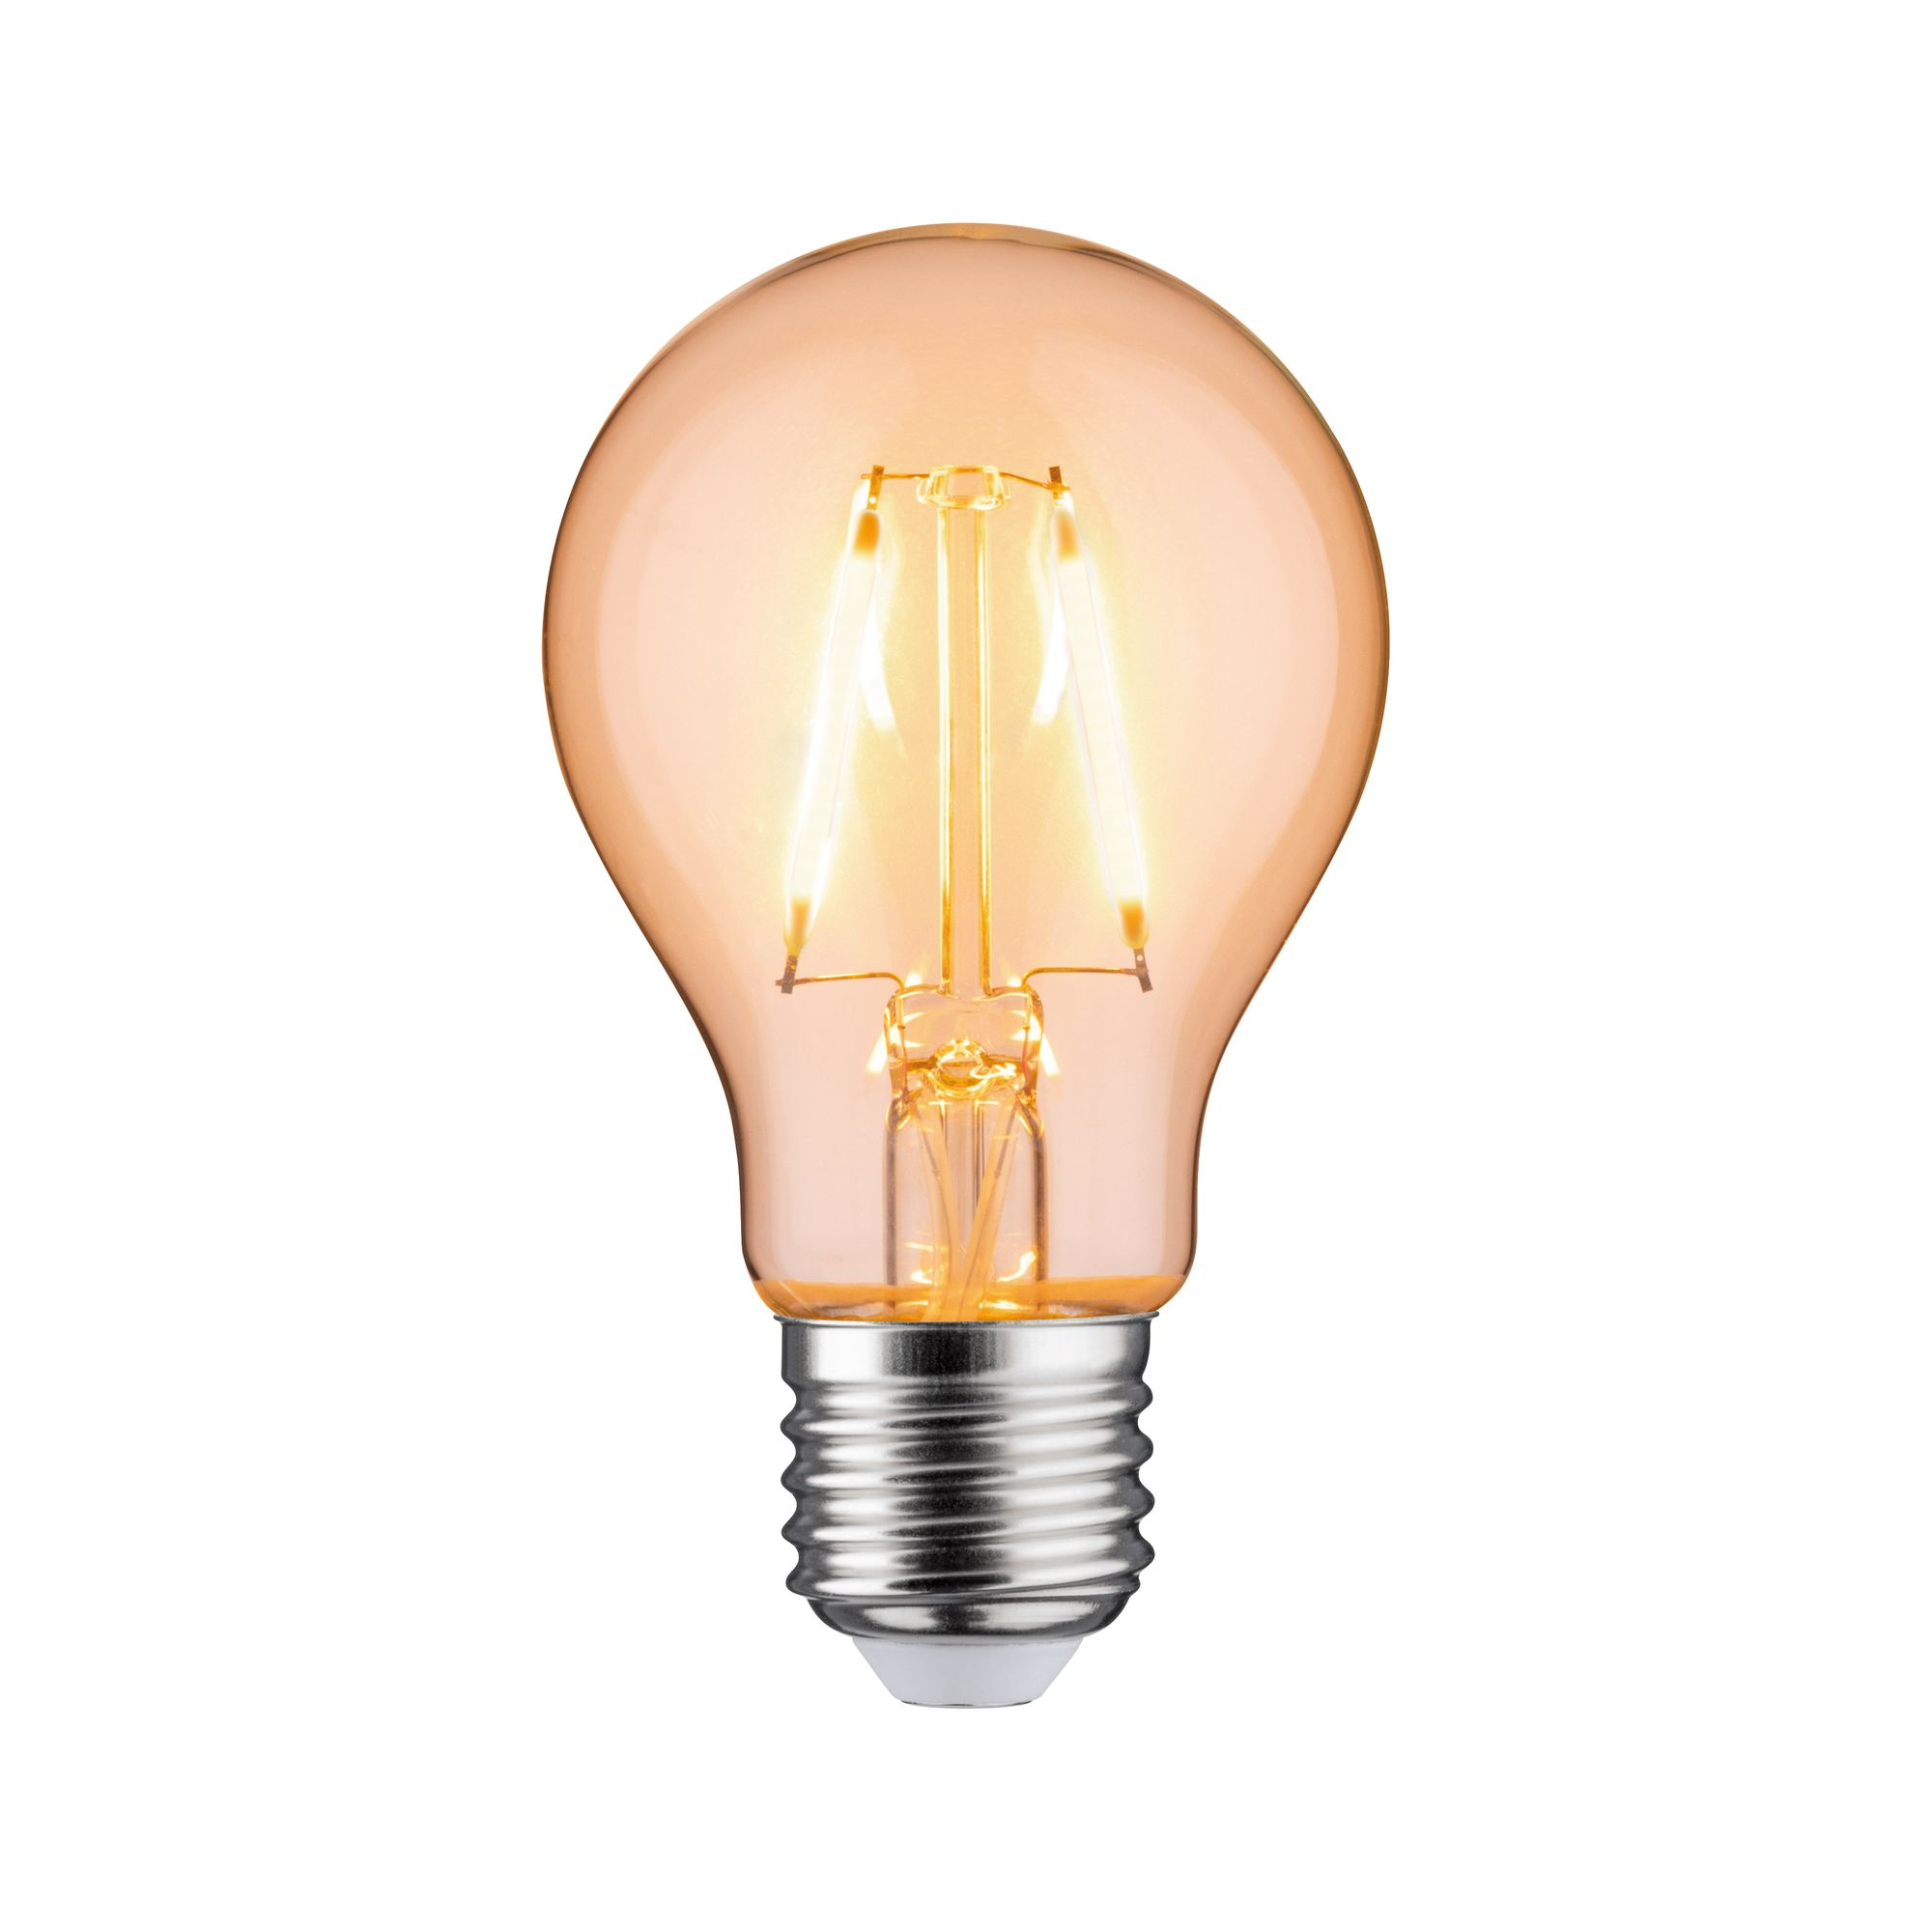 LED-Lampe E27 1,1W 100 lm orange klar + product picture